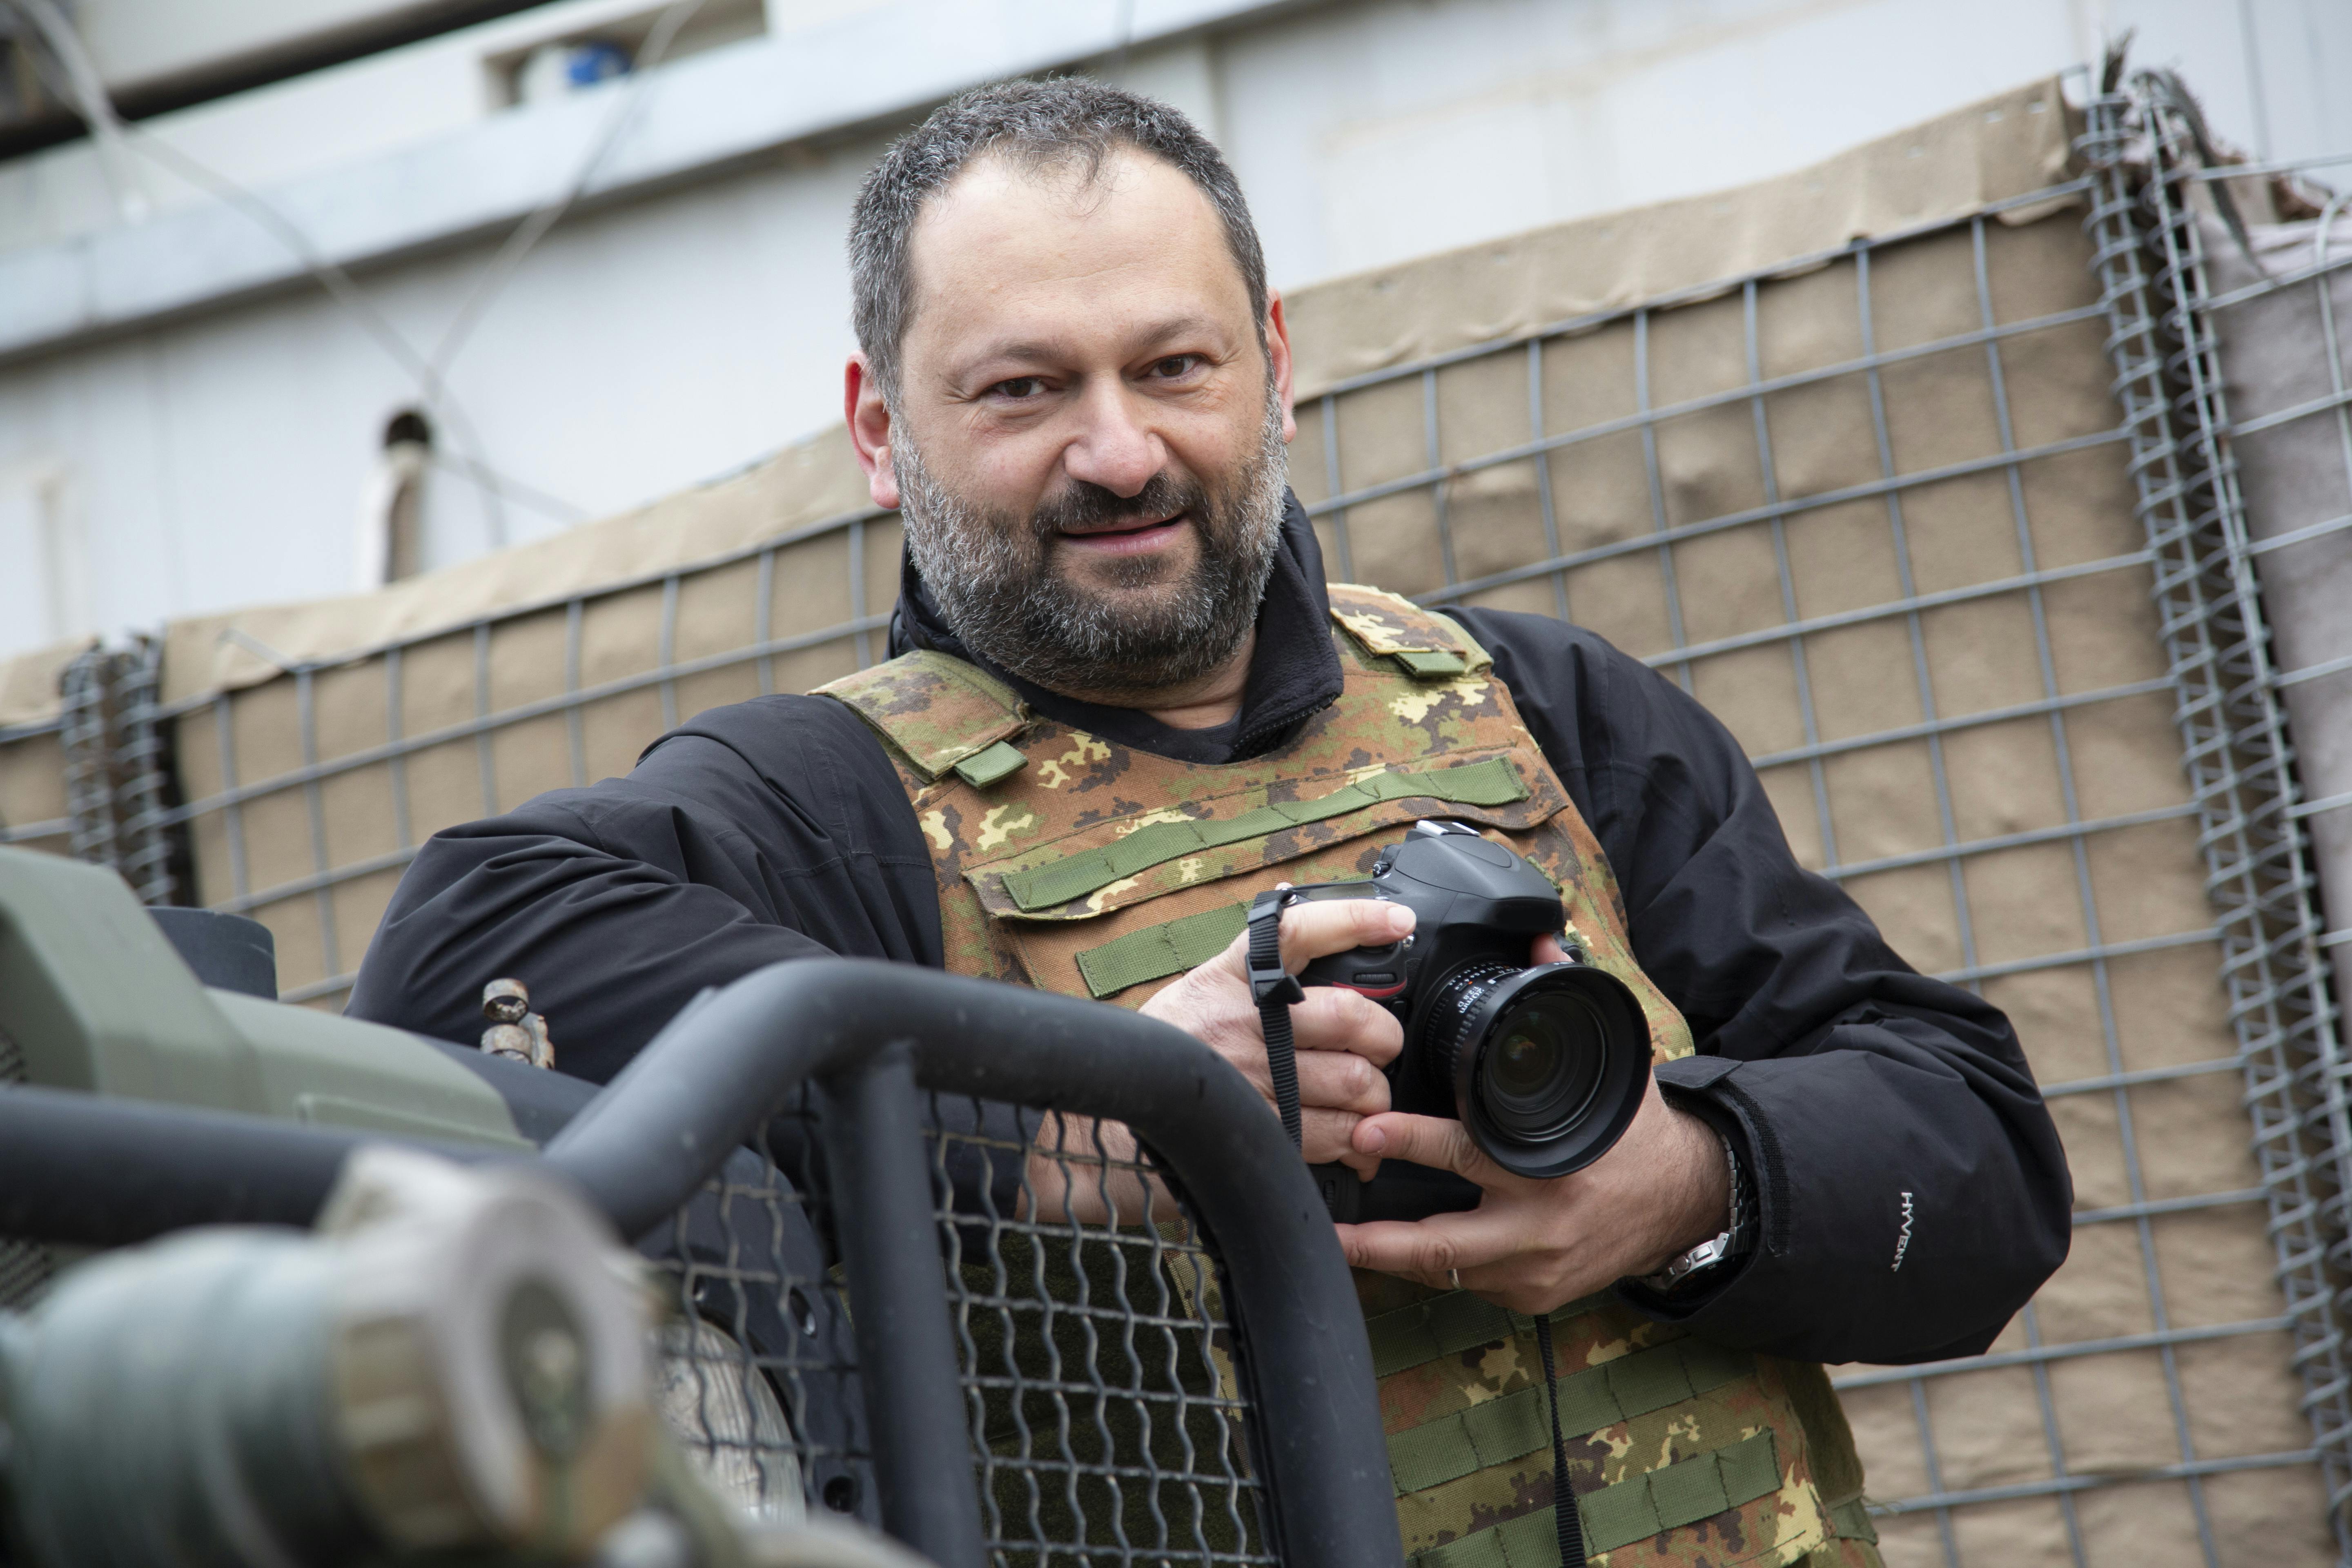 Roberto Travan, fotogiornalista di guerra con giubotto antiproiettile e macchina fotografica in mano